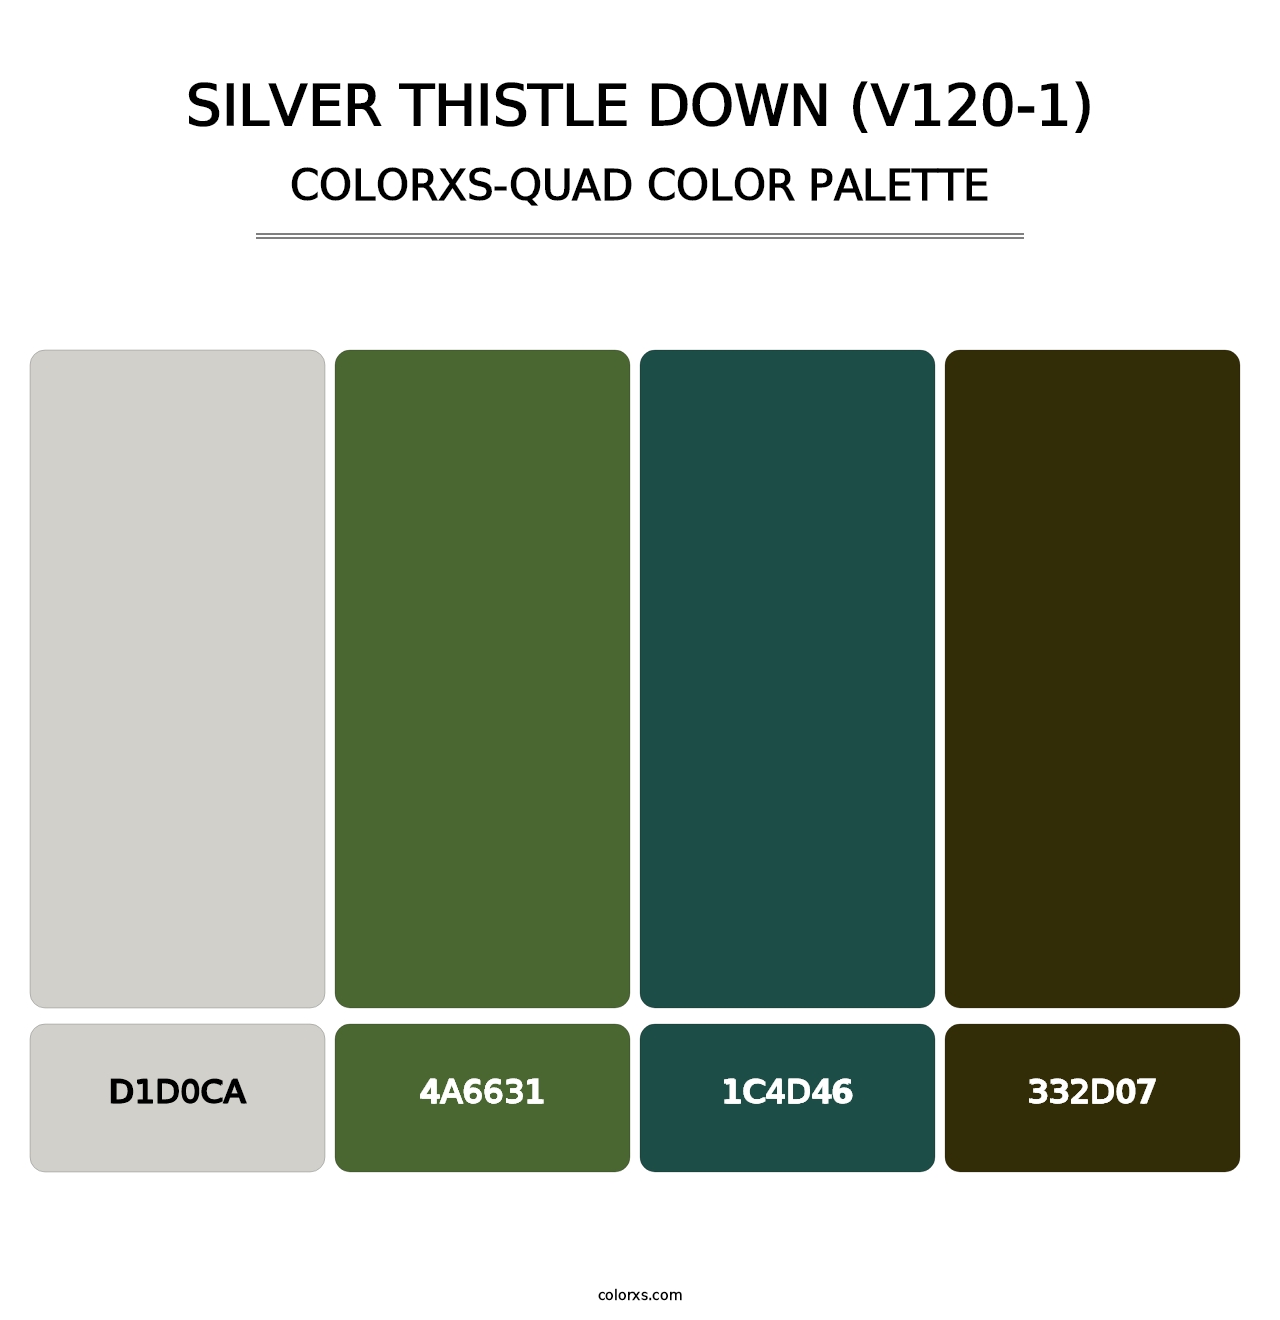 Silver Thistle Down (V120-1) - Colorxs Quad Palette